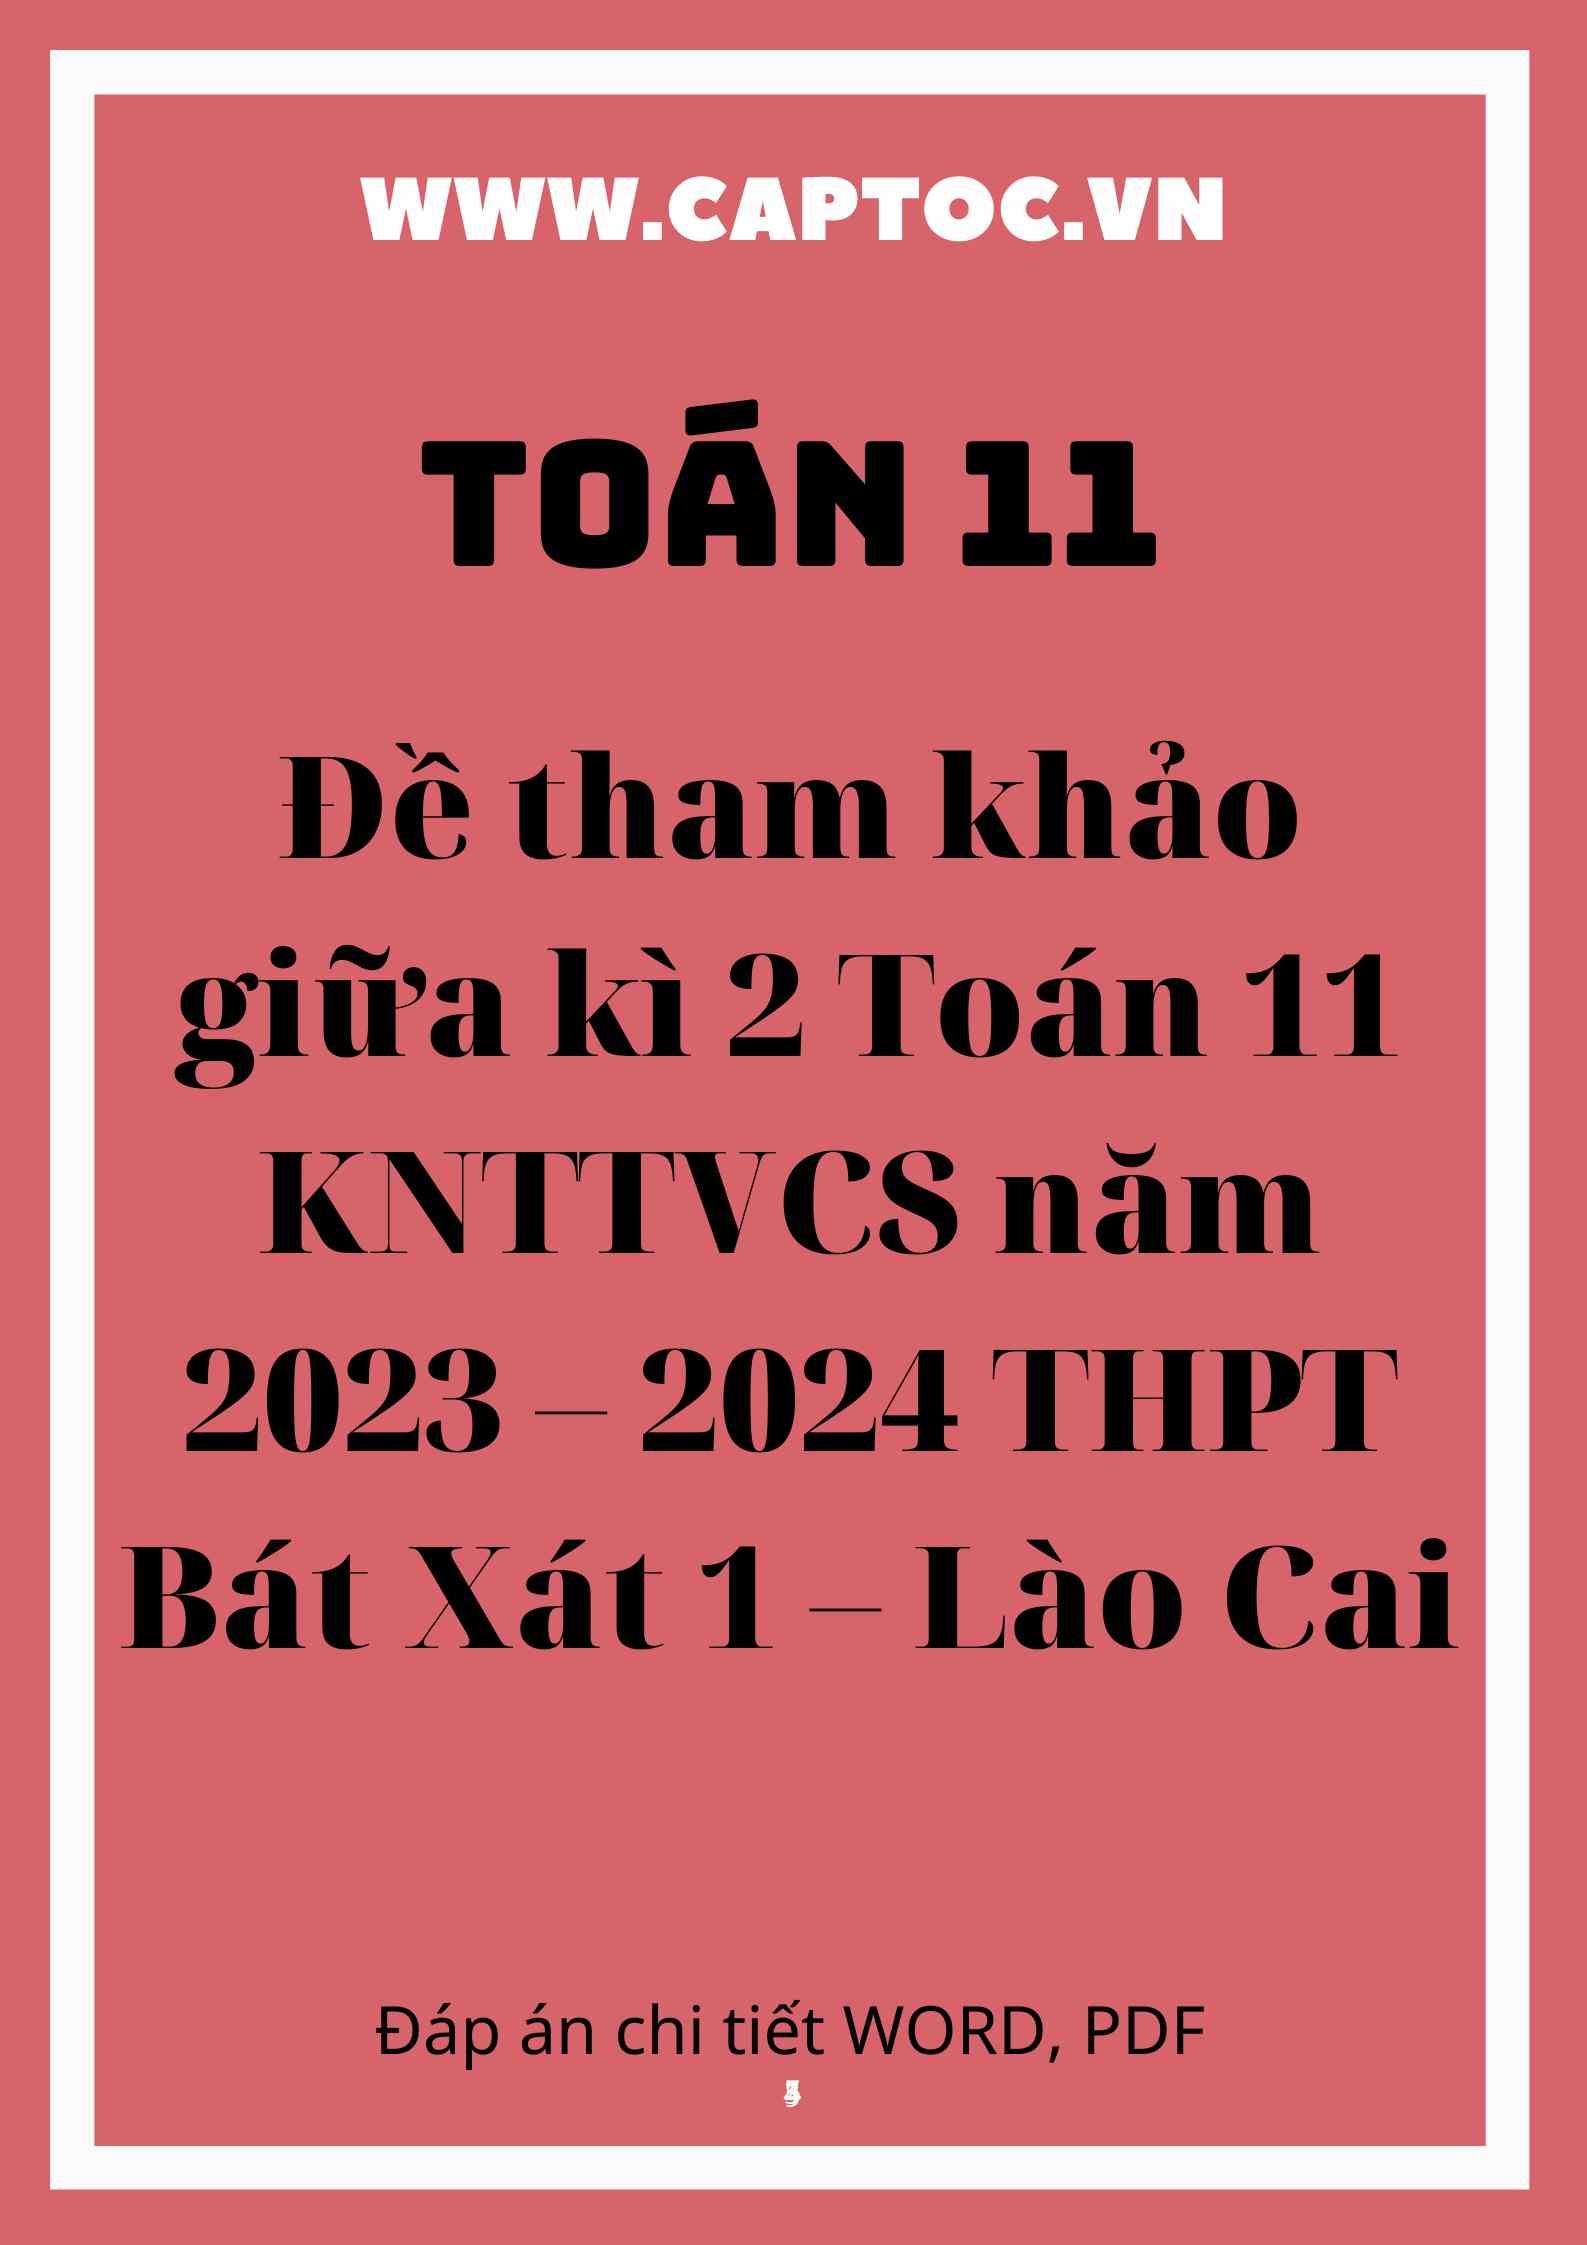 Đề tham khảo giữa kì 2 Toán 11 KNTTVCS năm 2023 – 2024 THPT Bát Xát 1 – Lào Cai